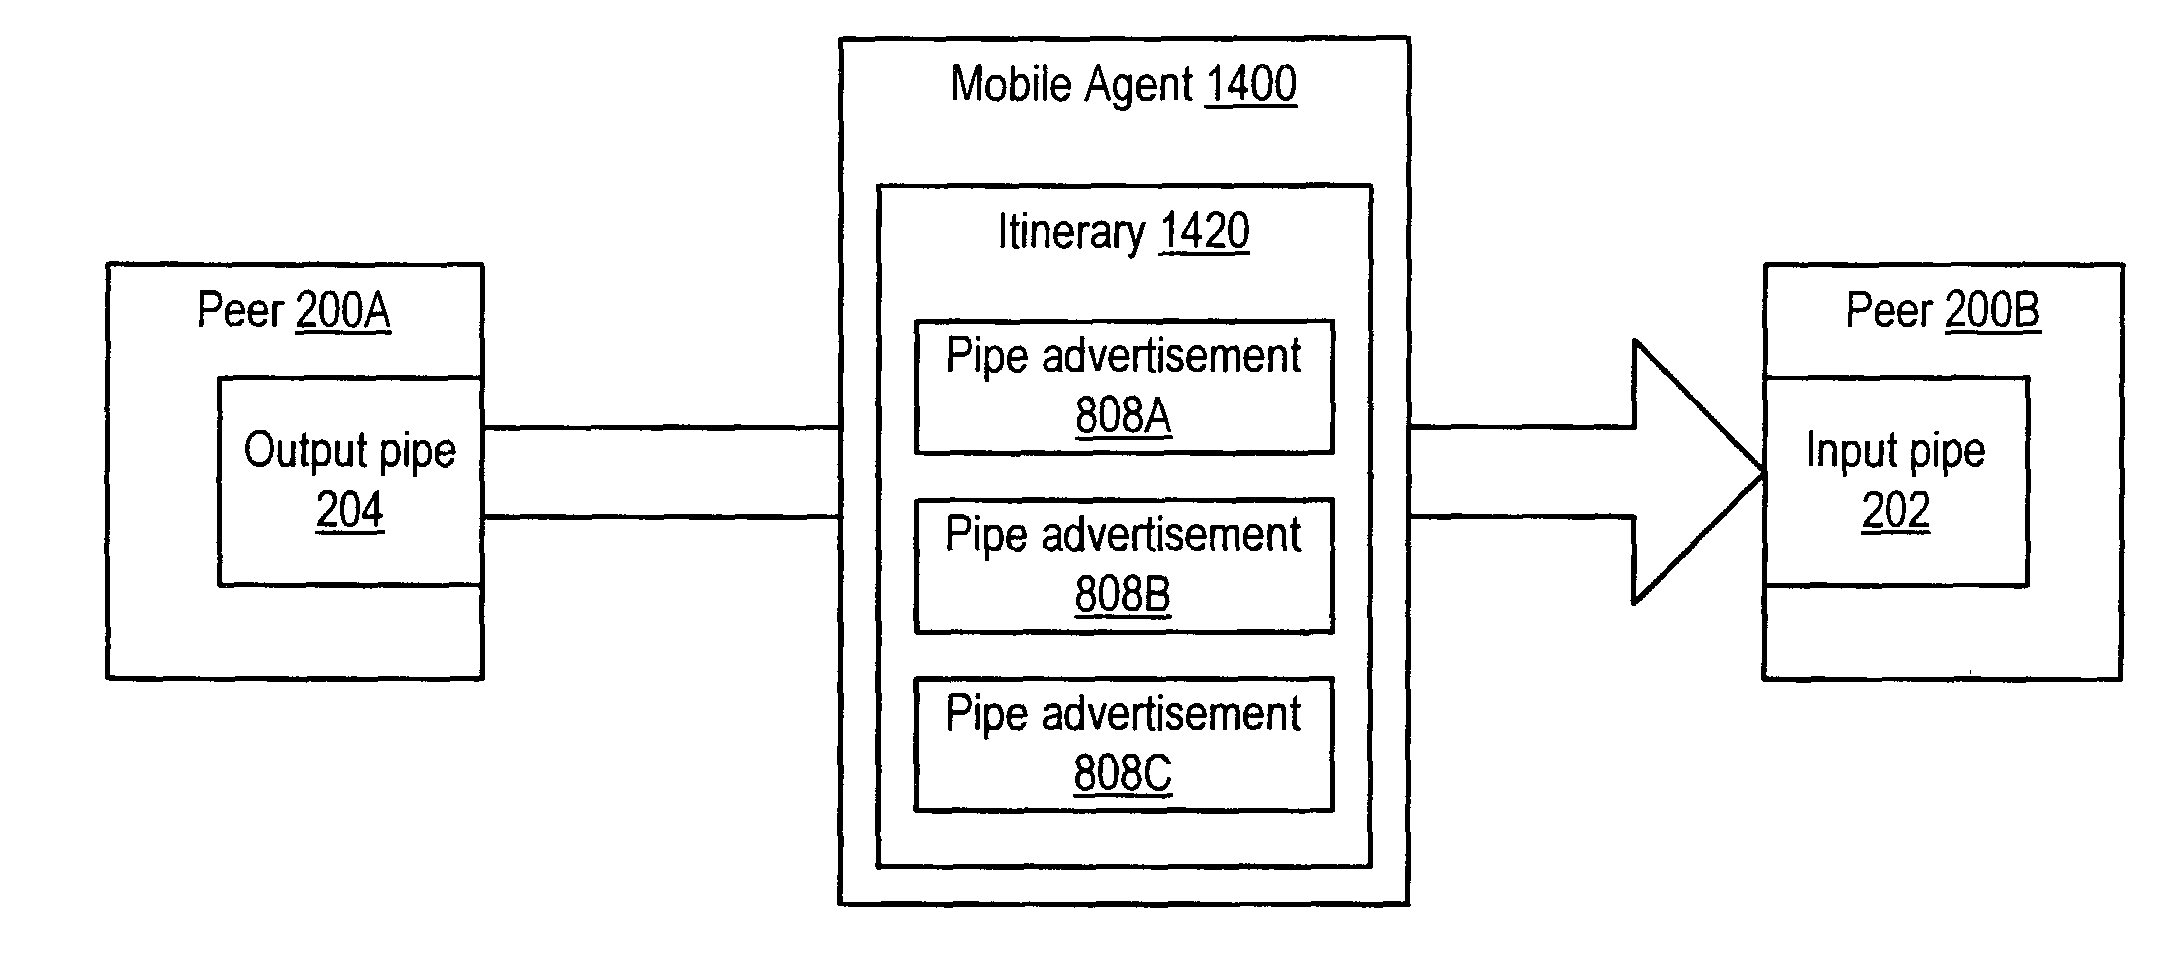 Mobile agents in peer-to-peer networks